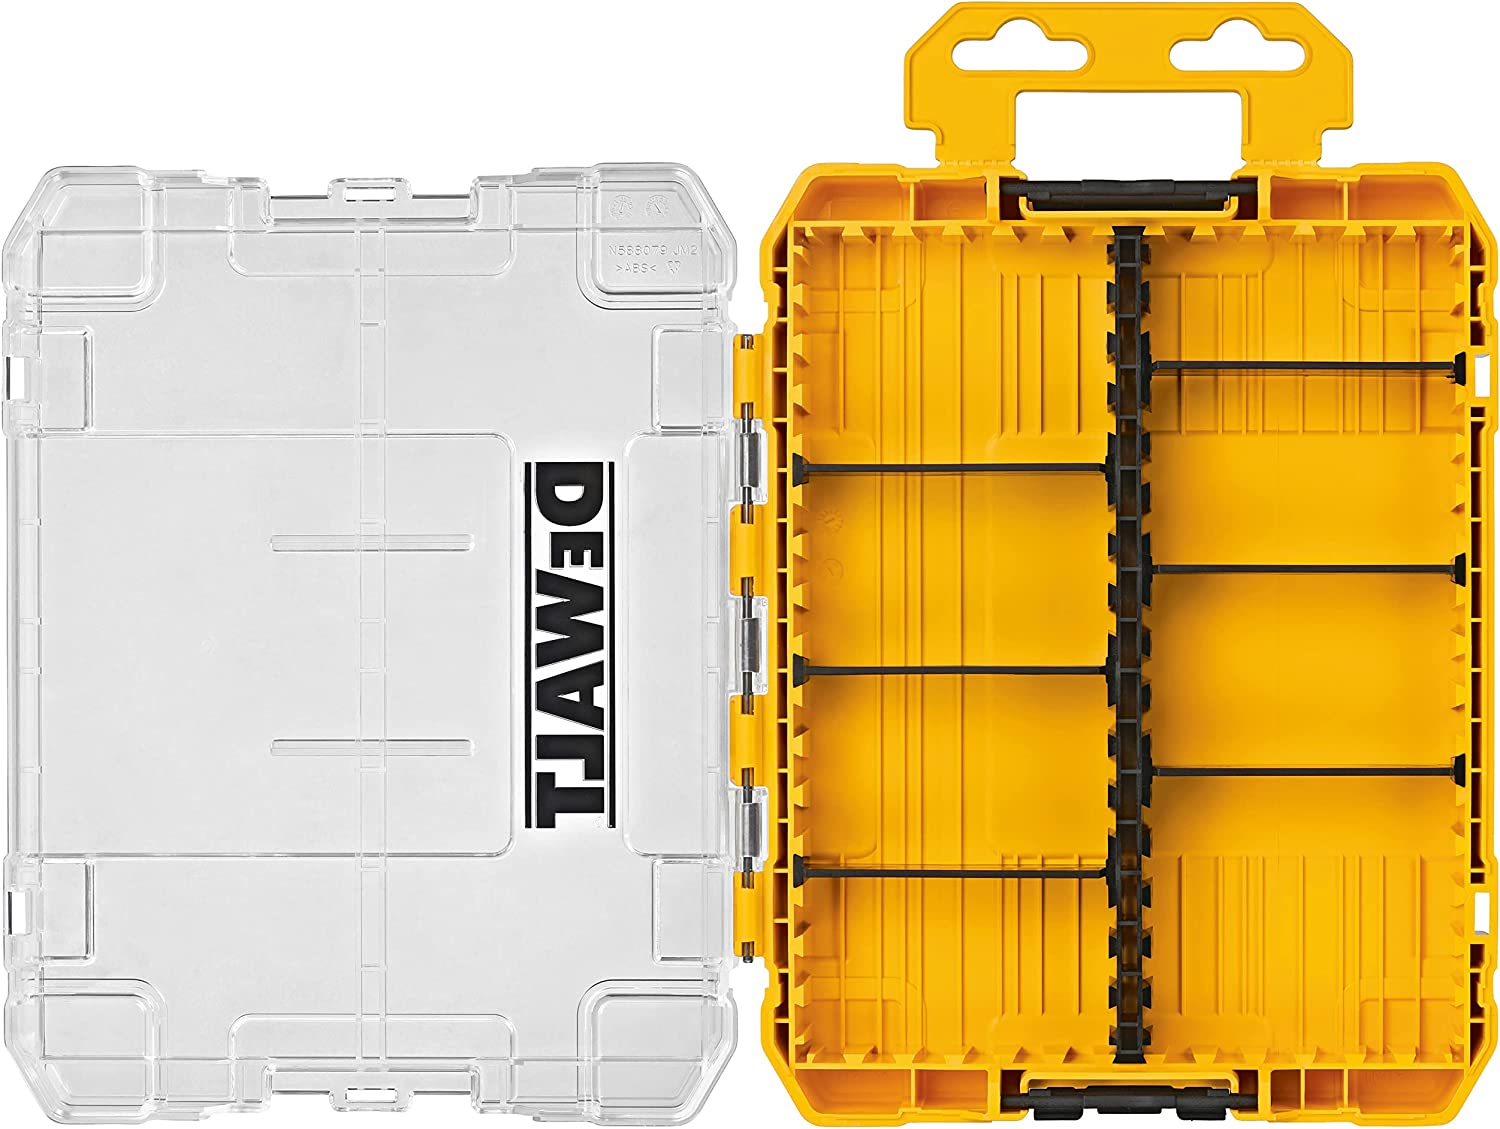 デウォルト DEWALT タフケース 中 デバイダー付き 工具箱 収納ケース ツールボックス 小物入れ 透明蓋 DWAN2190